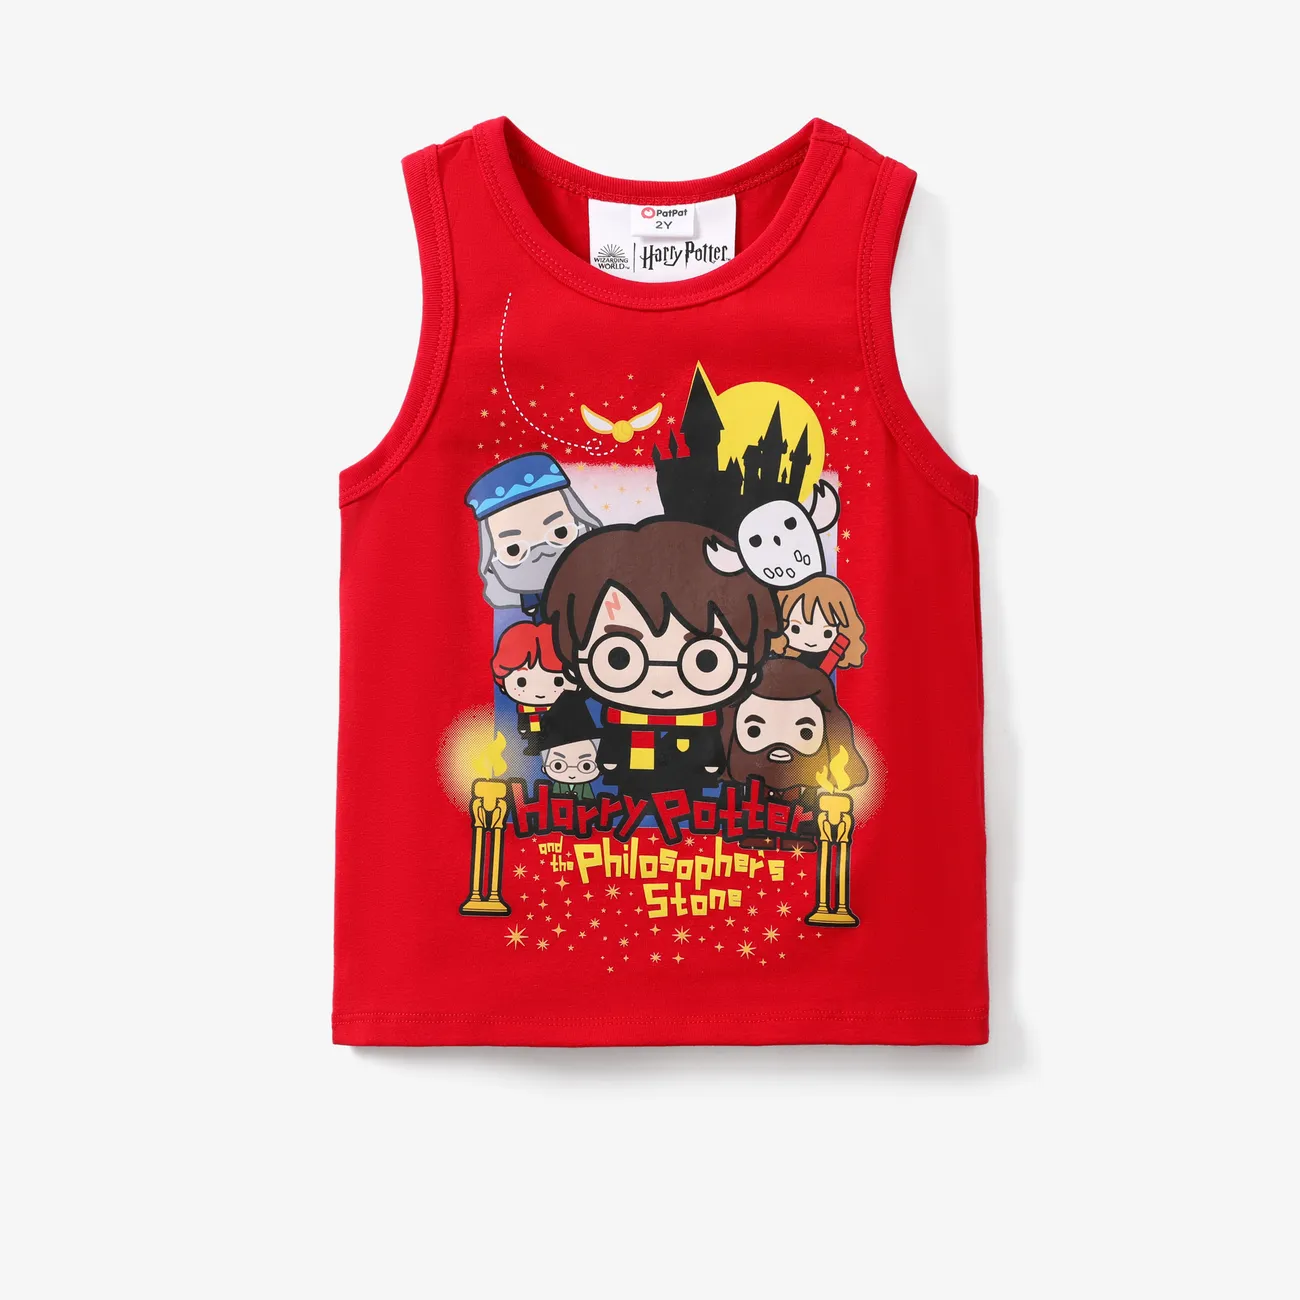 Harry Potter Enfant en bas âge Garçon Enfantin ensembles de t-shirts Rouge big image 1